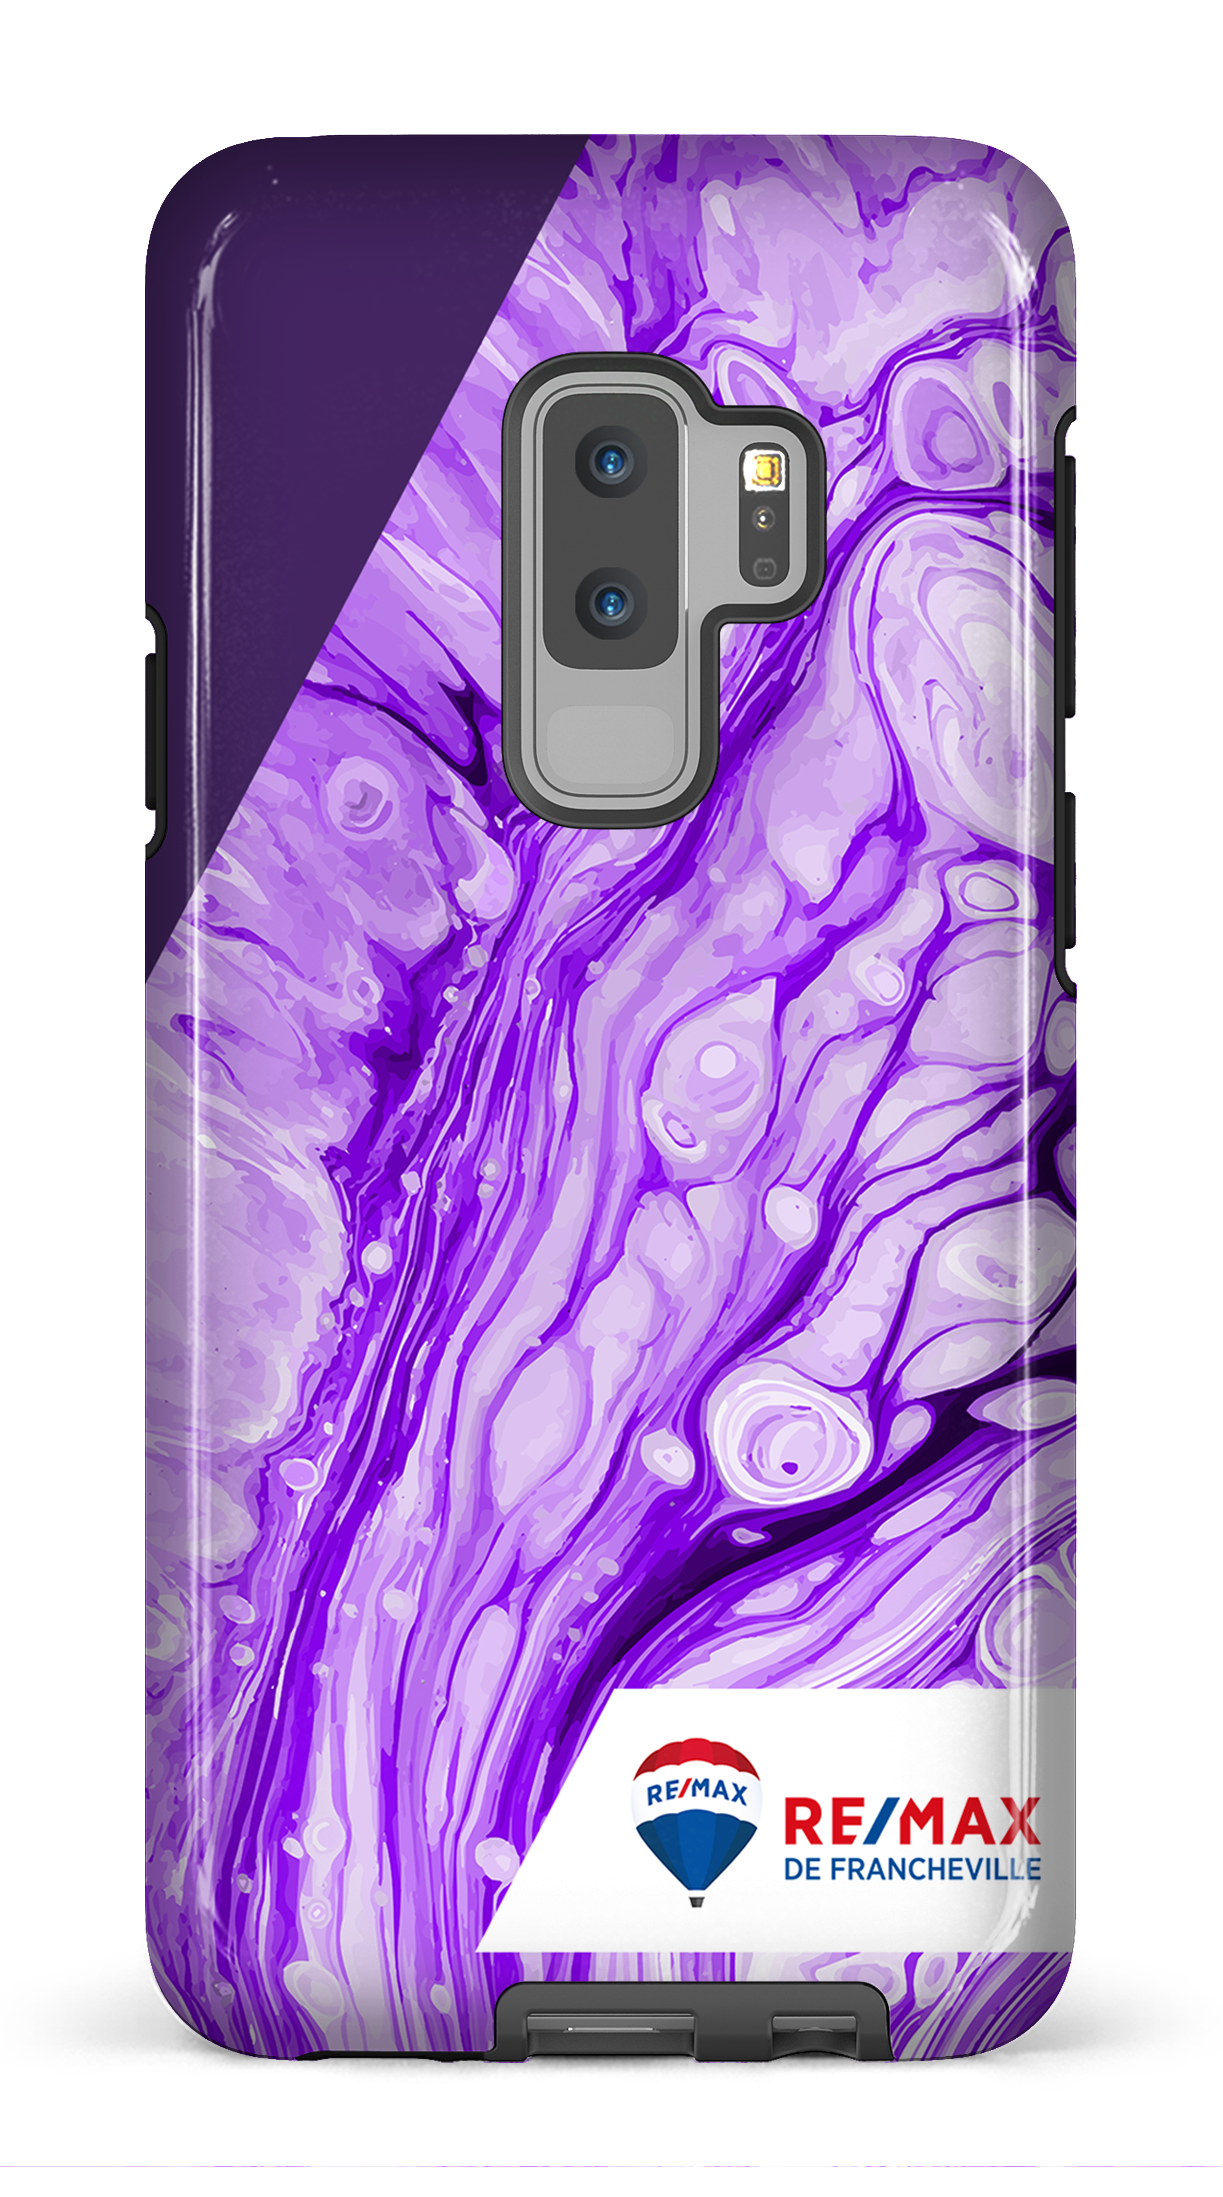 Peinture marbrée claire violette de Francheville - Galaxy S9 Plus